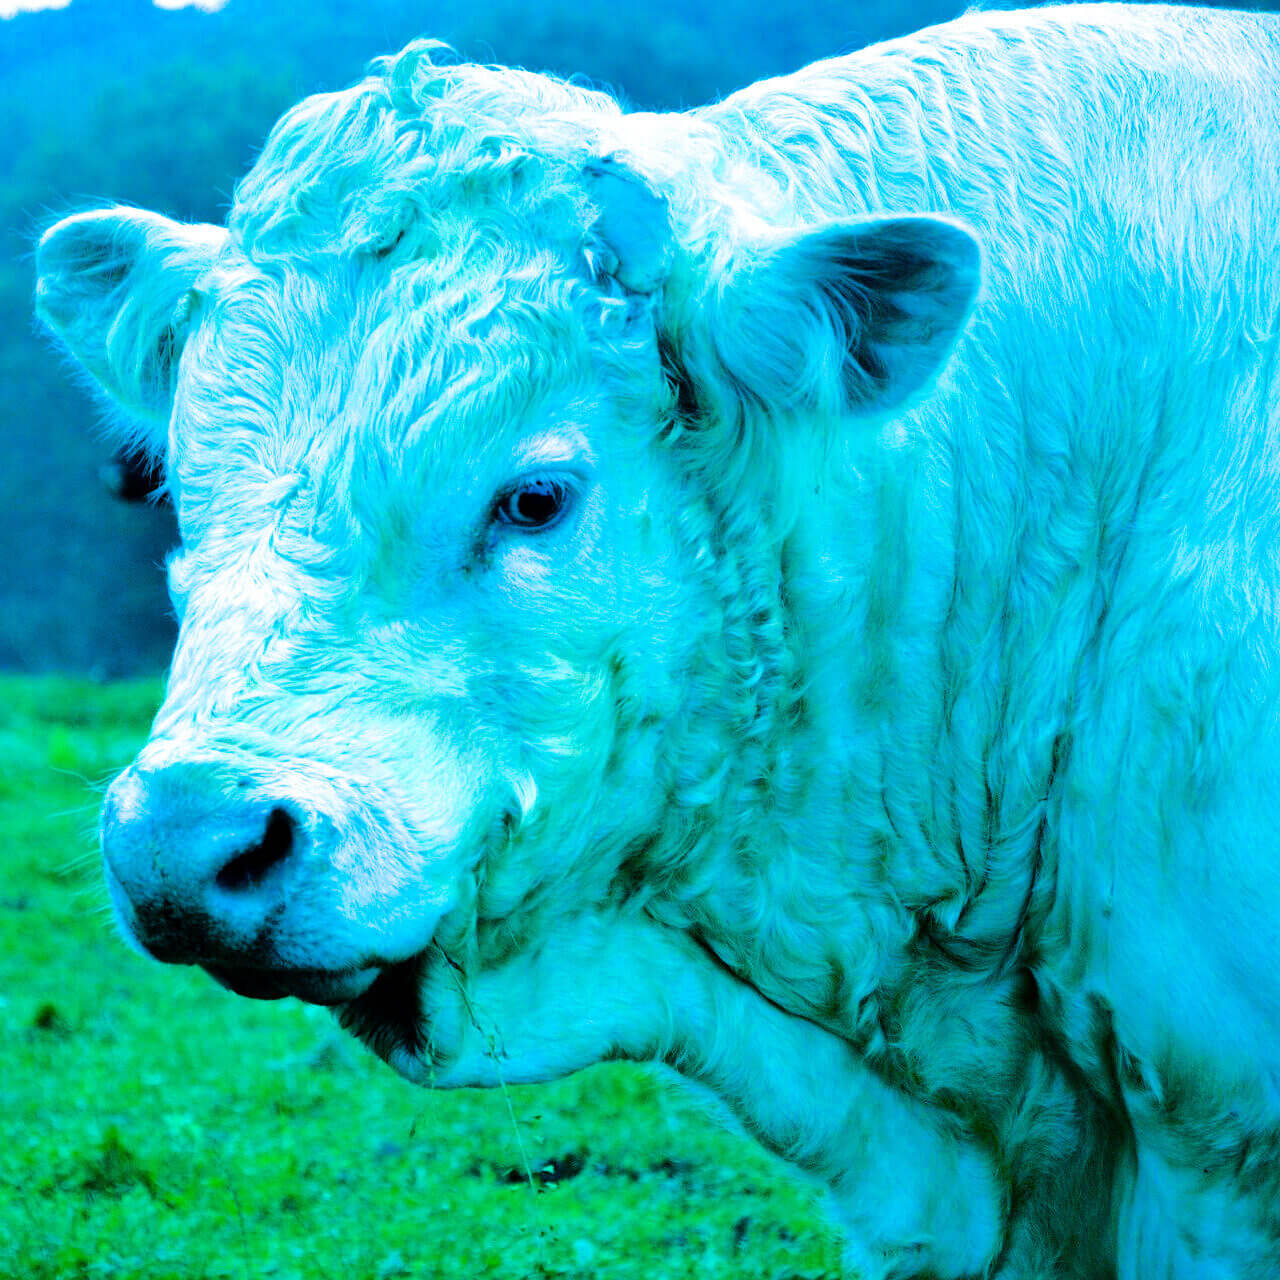 Blue Bull at Glenshesk, Ballycastle